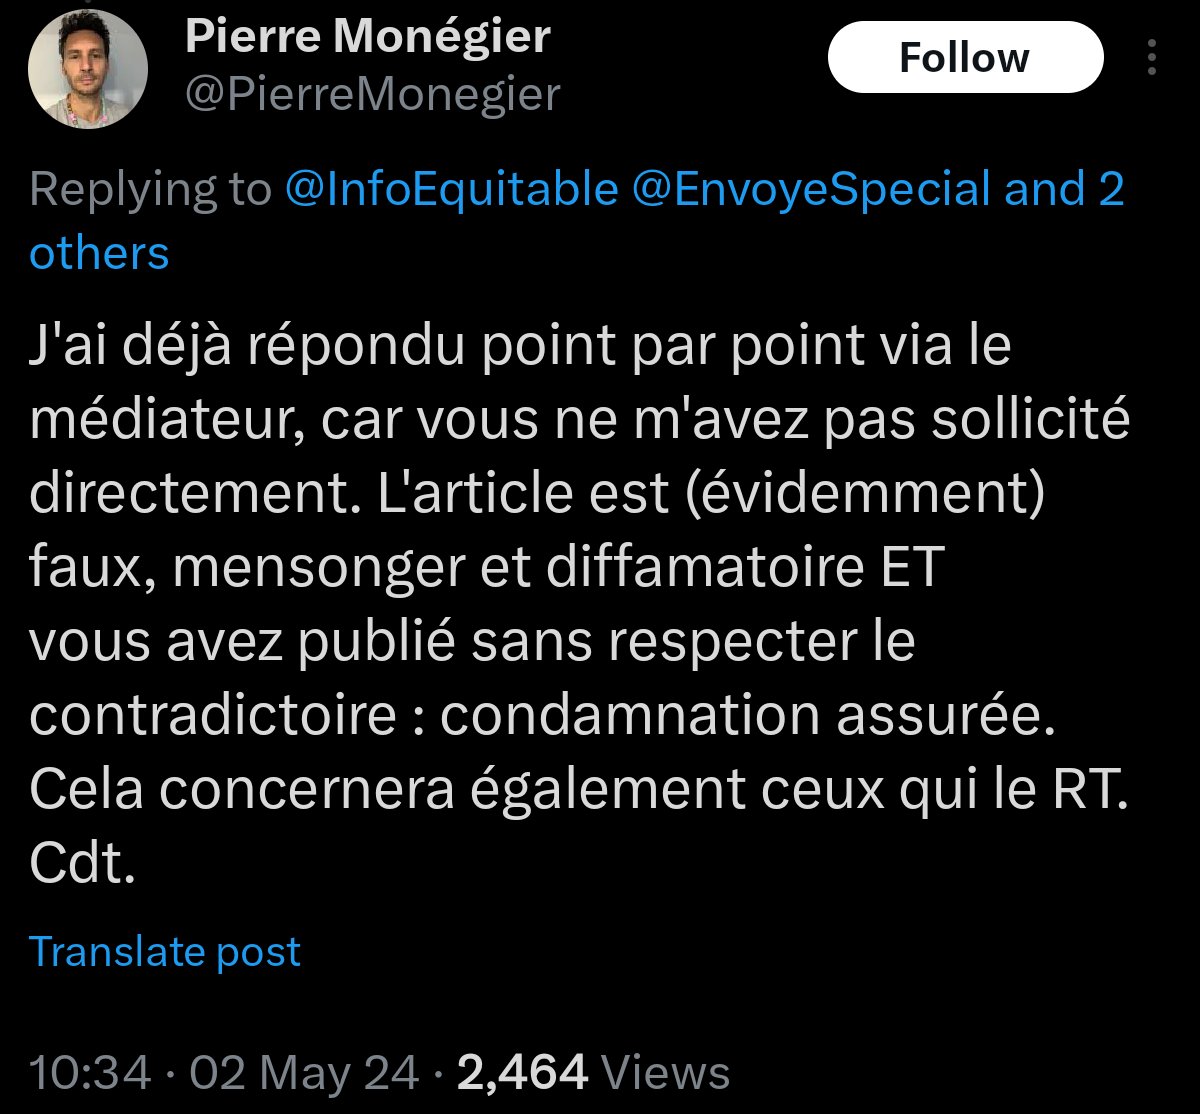 Suite à la remise en cause d'une partie de son reportage pour #EnvoyeSpecial, @PierreMonegier avait cité le post, et donné une explication qui rendait les choses encore plus douteuses.

On a appris hier via @InfoEquitable que le journaliste qui a fourni cette partie se révèle…